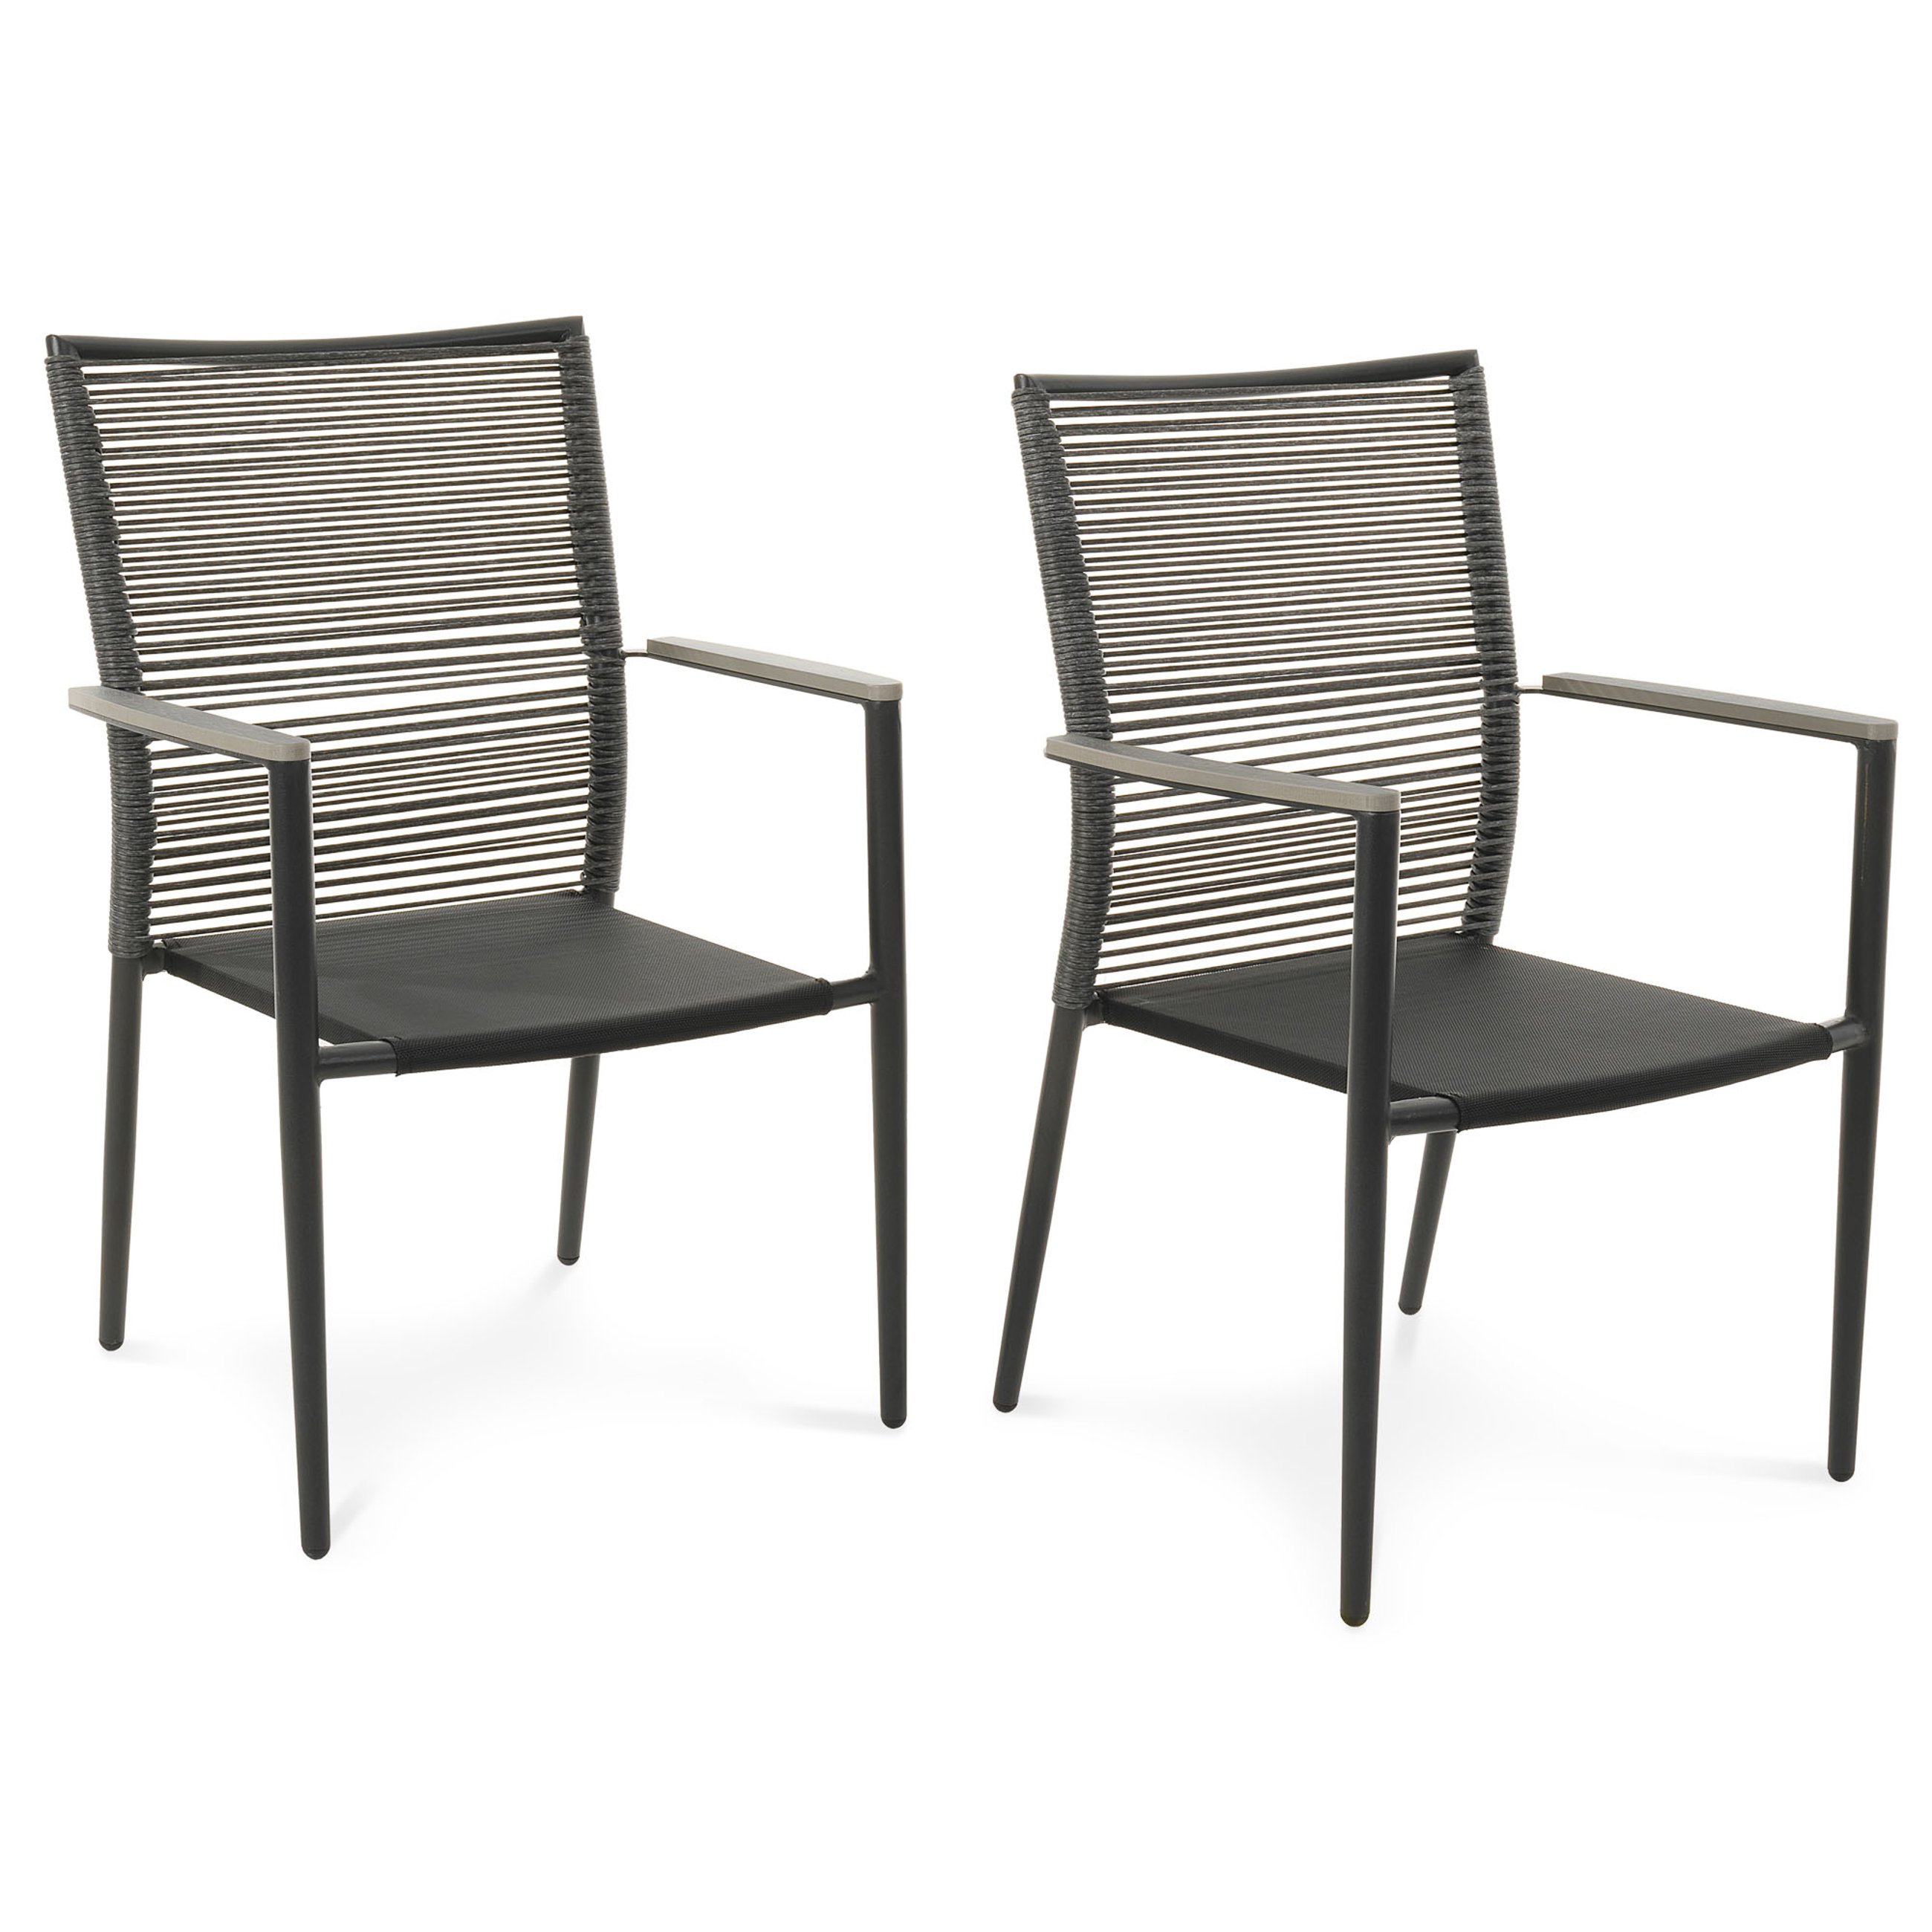 Aluminiowa konstrukcja krzesła Asti szarego jest bardzo wytrzymała i odporna na działanie wilgoci